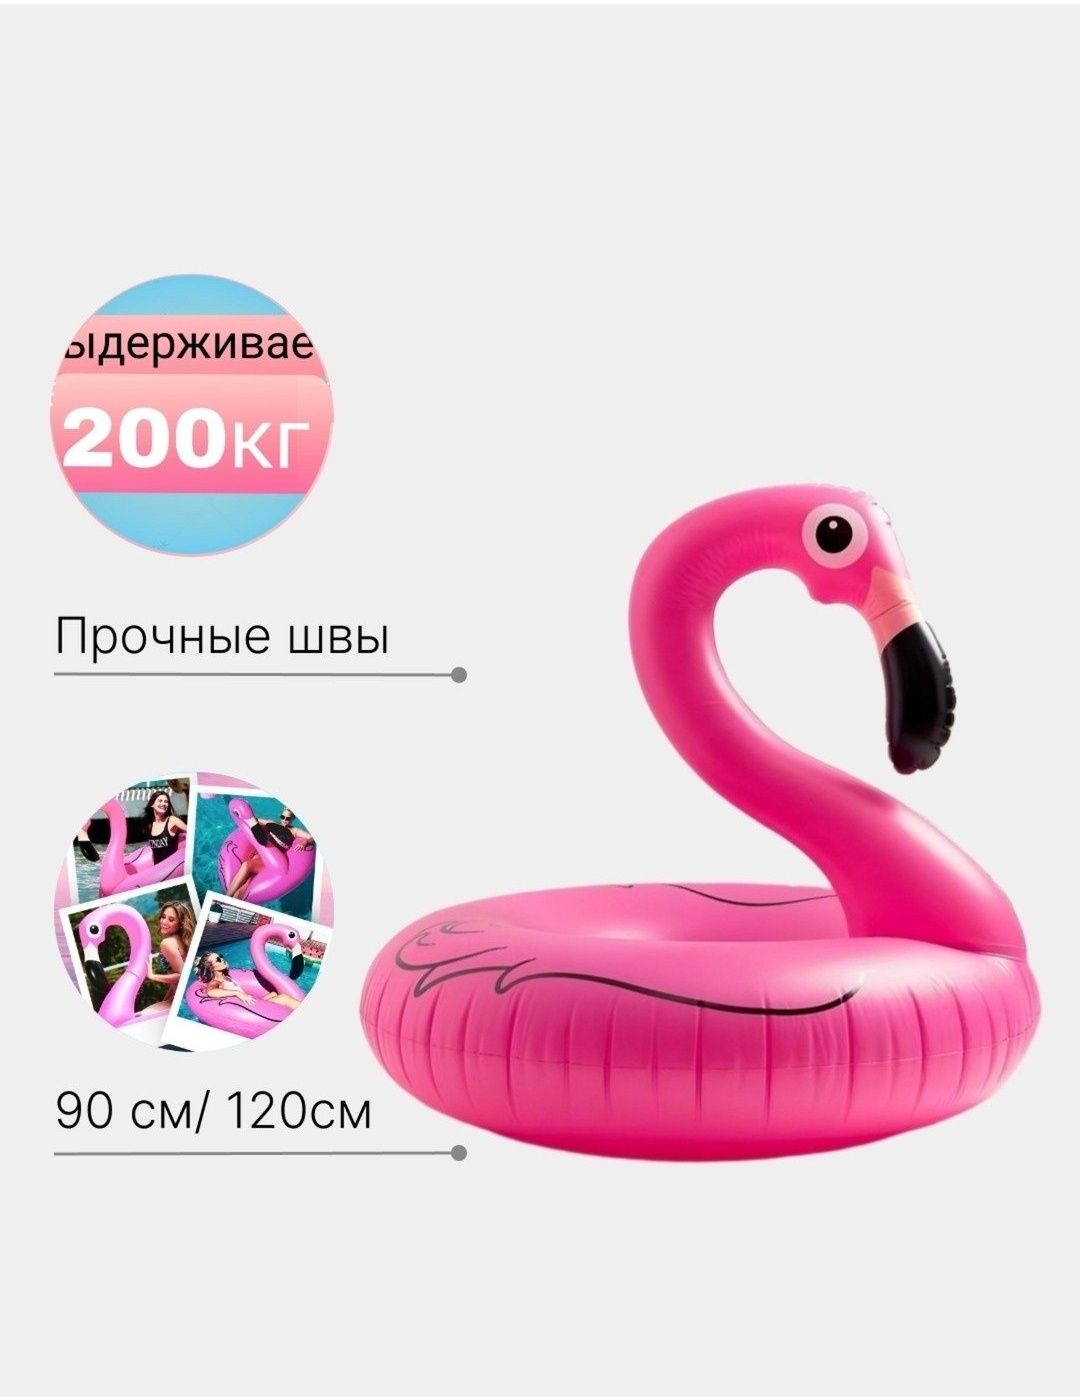 Надувной круг фламинго для плаванья